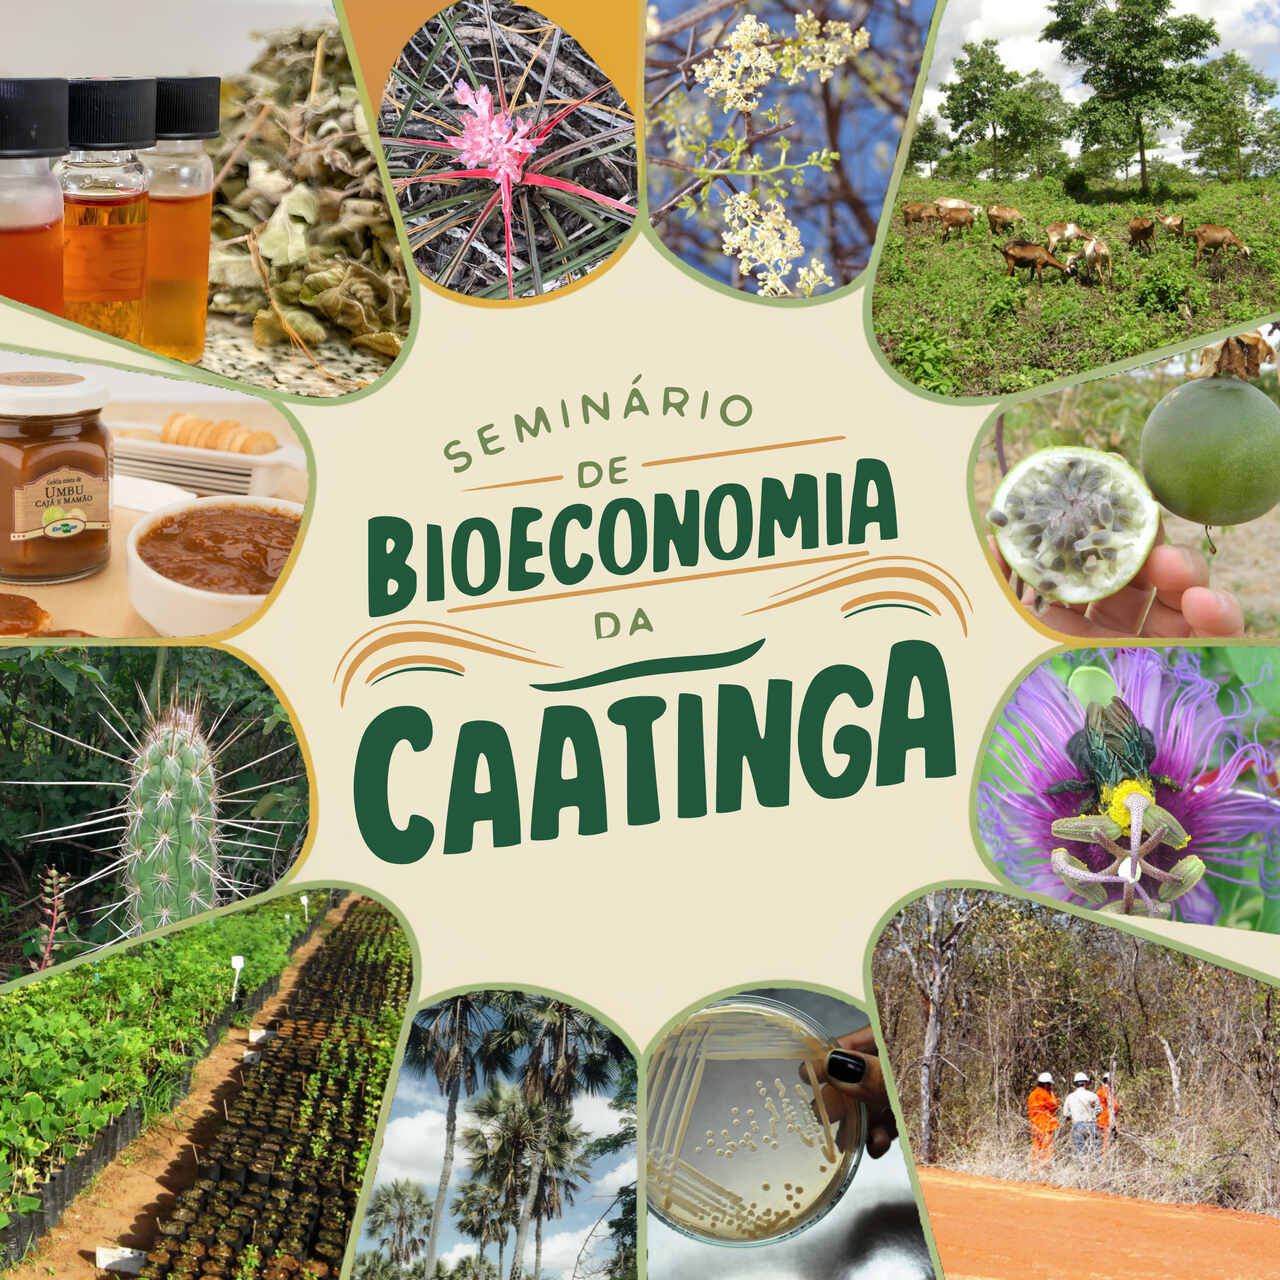 Seminário apresentará avanços e oportunidades da Bioeconomia na Caatinga